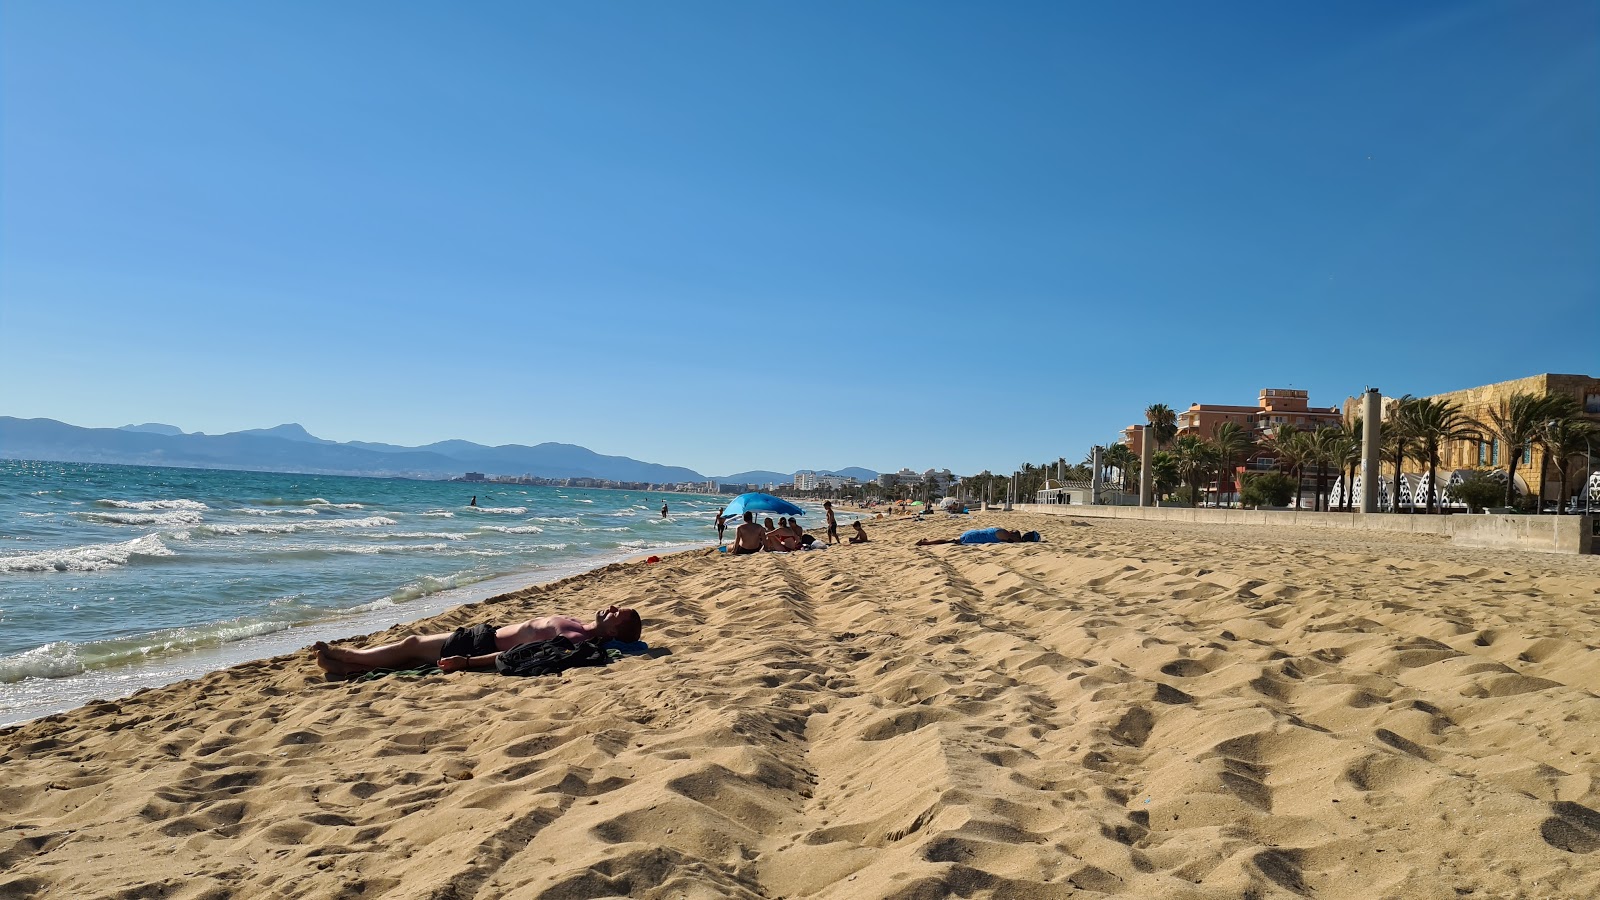 Playa de Palma'in fotoğrafı parlak ince kum yüzey ile